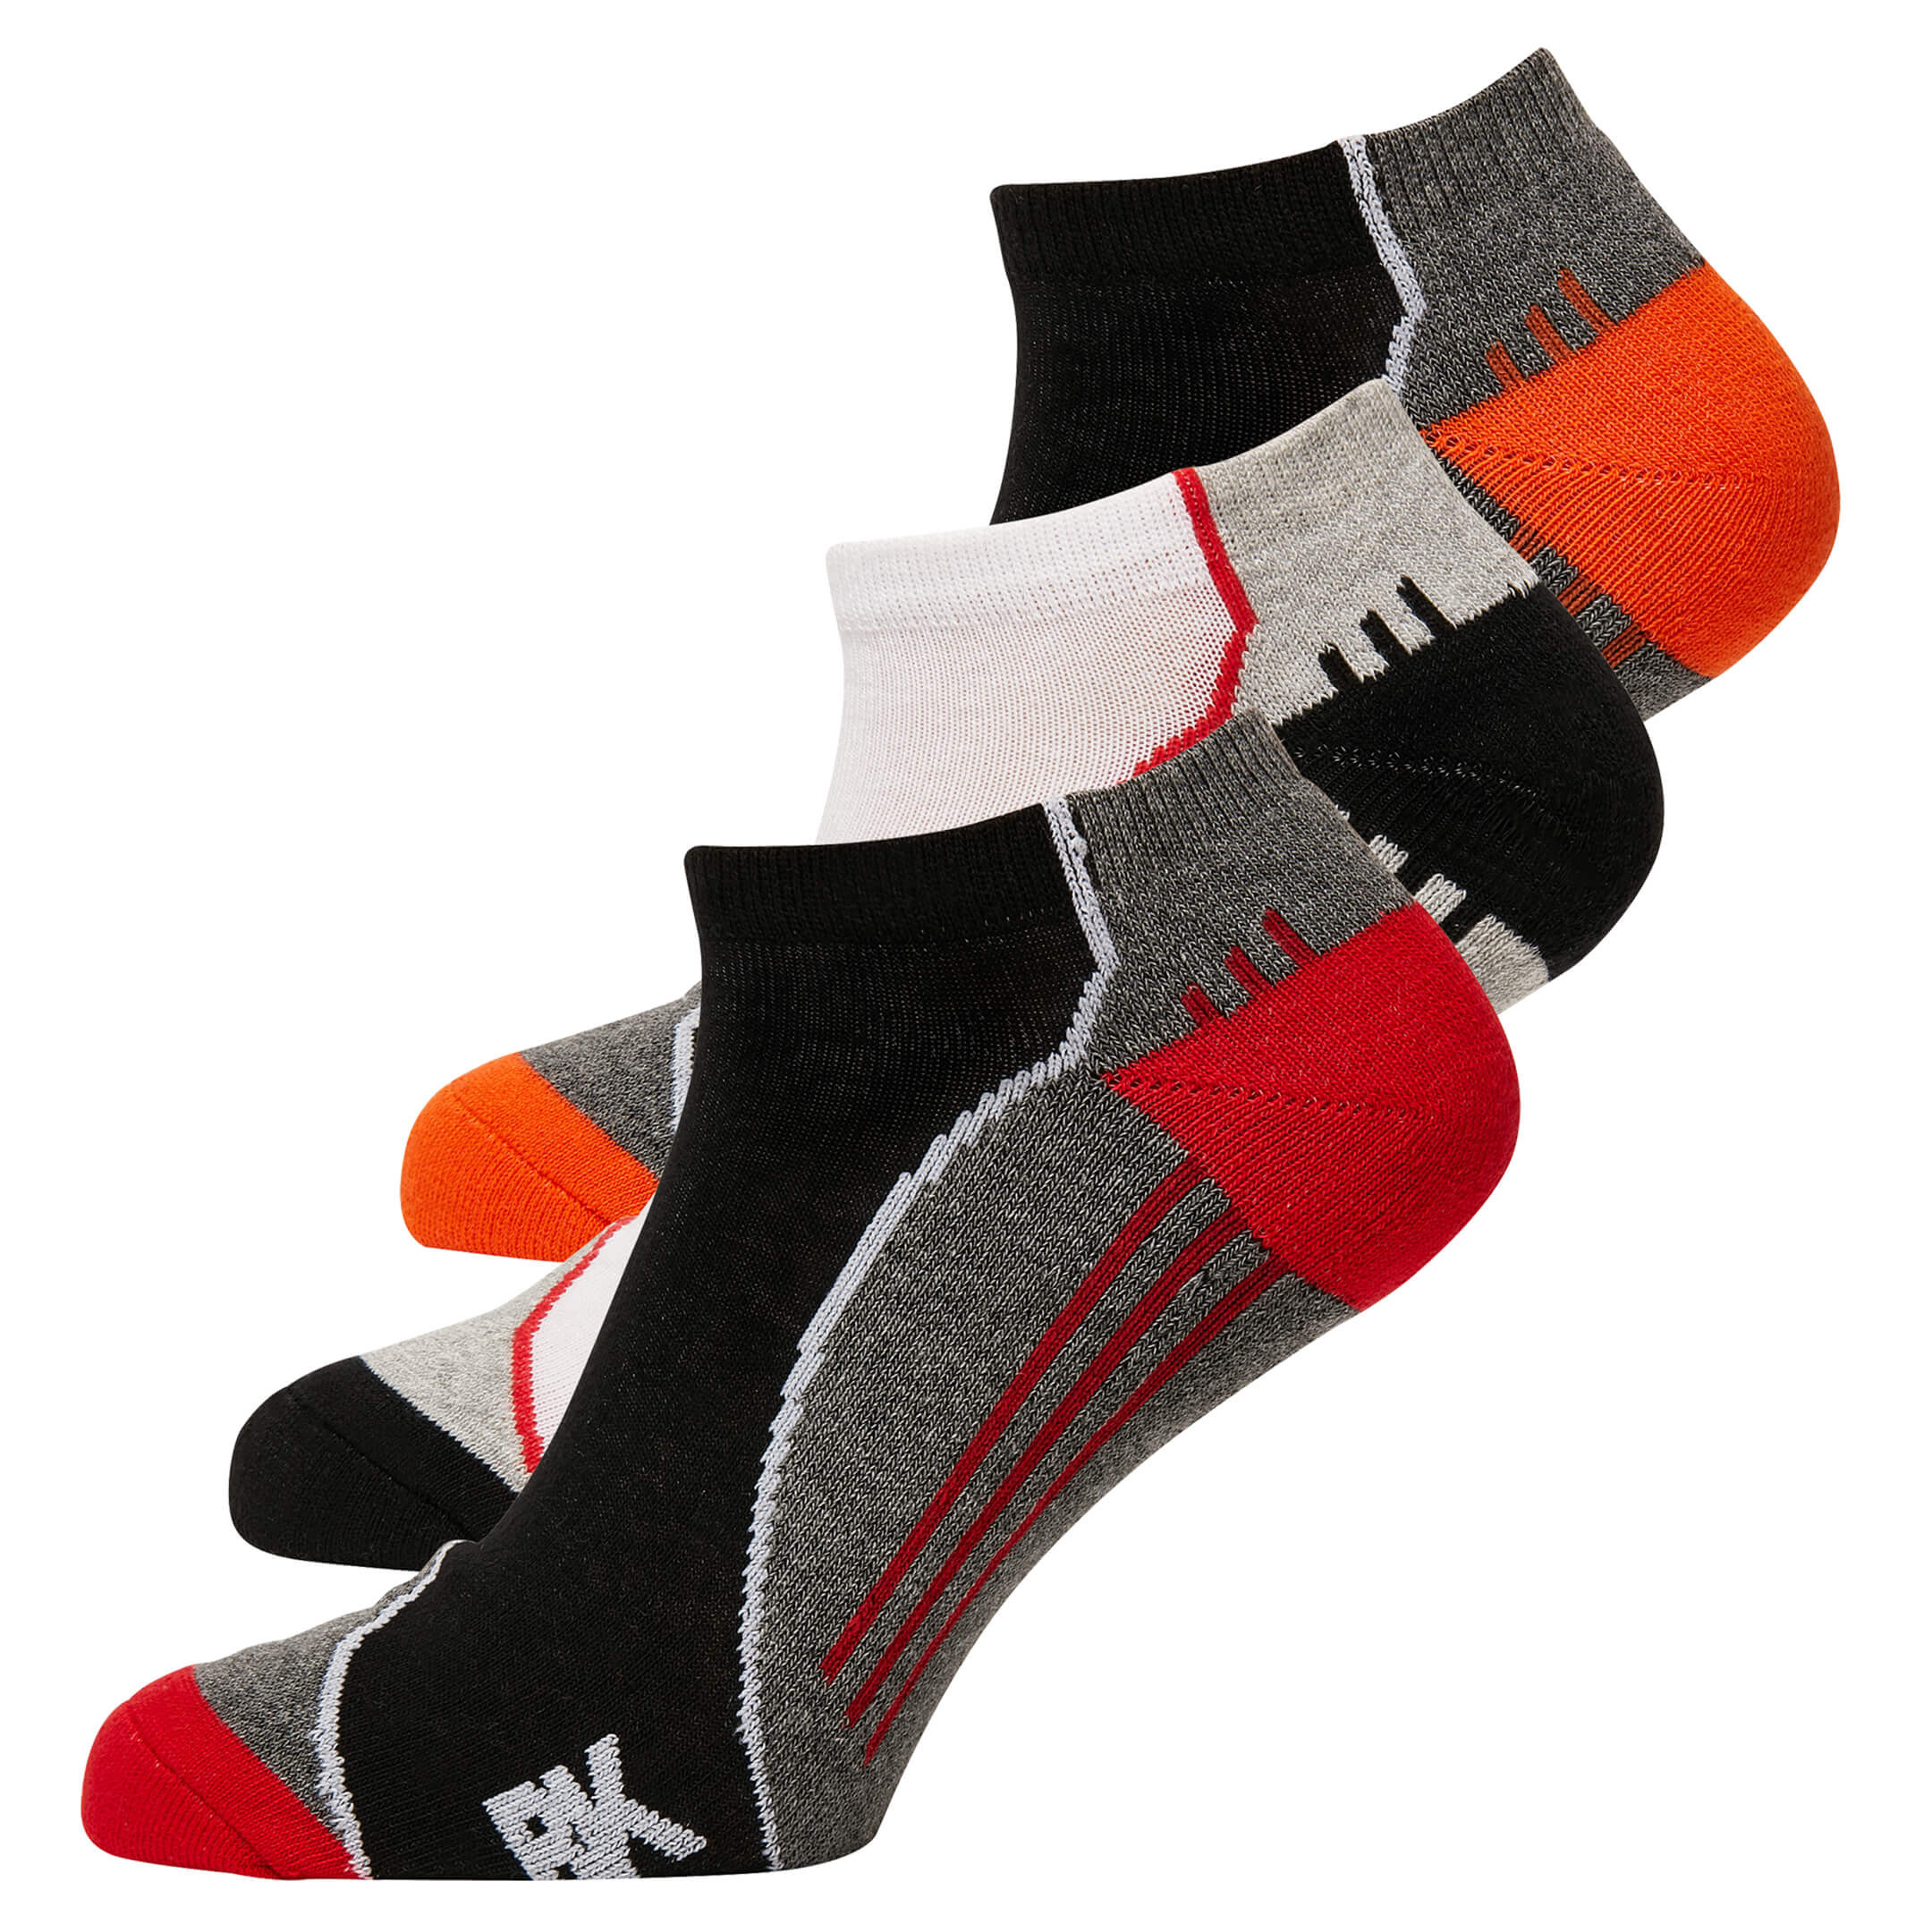 Rigg-socks British Flag Skull For Men Comfortable Sport Socks Black